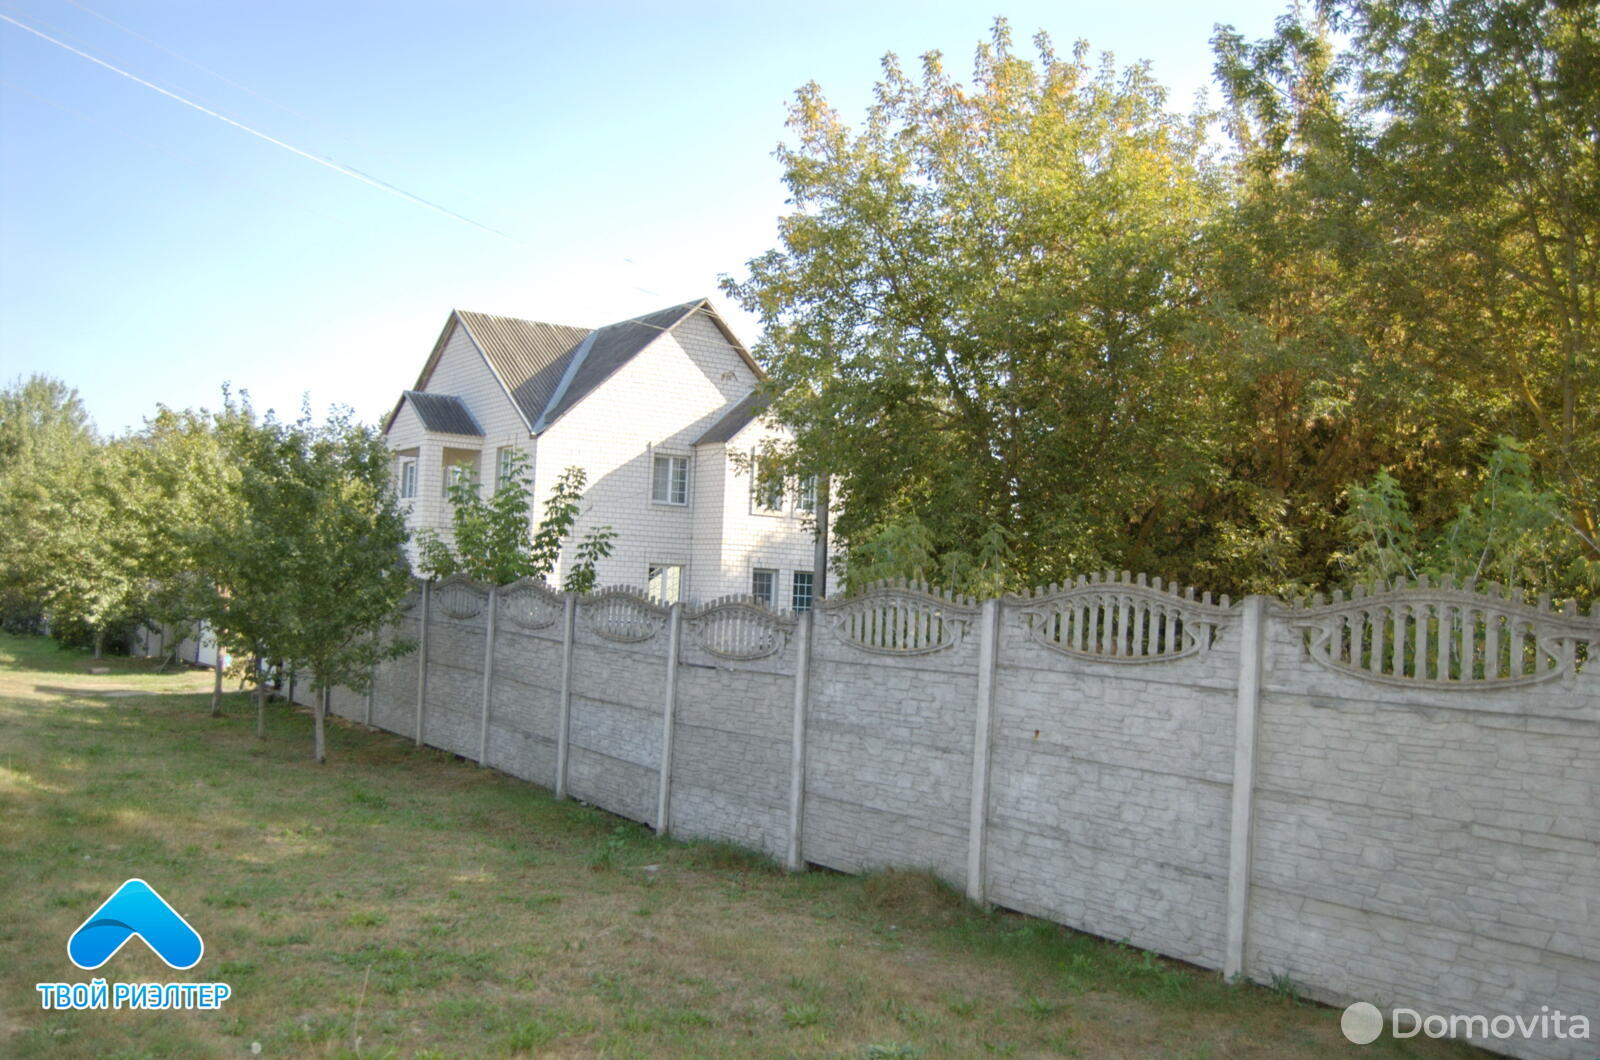 Продать 2-этажный дом в Добруше, Гомельская область ул. Янки Купалы, 40000USD - фото 4